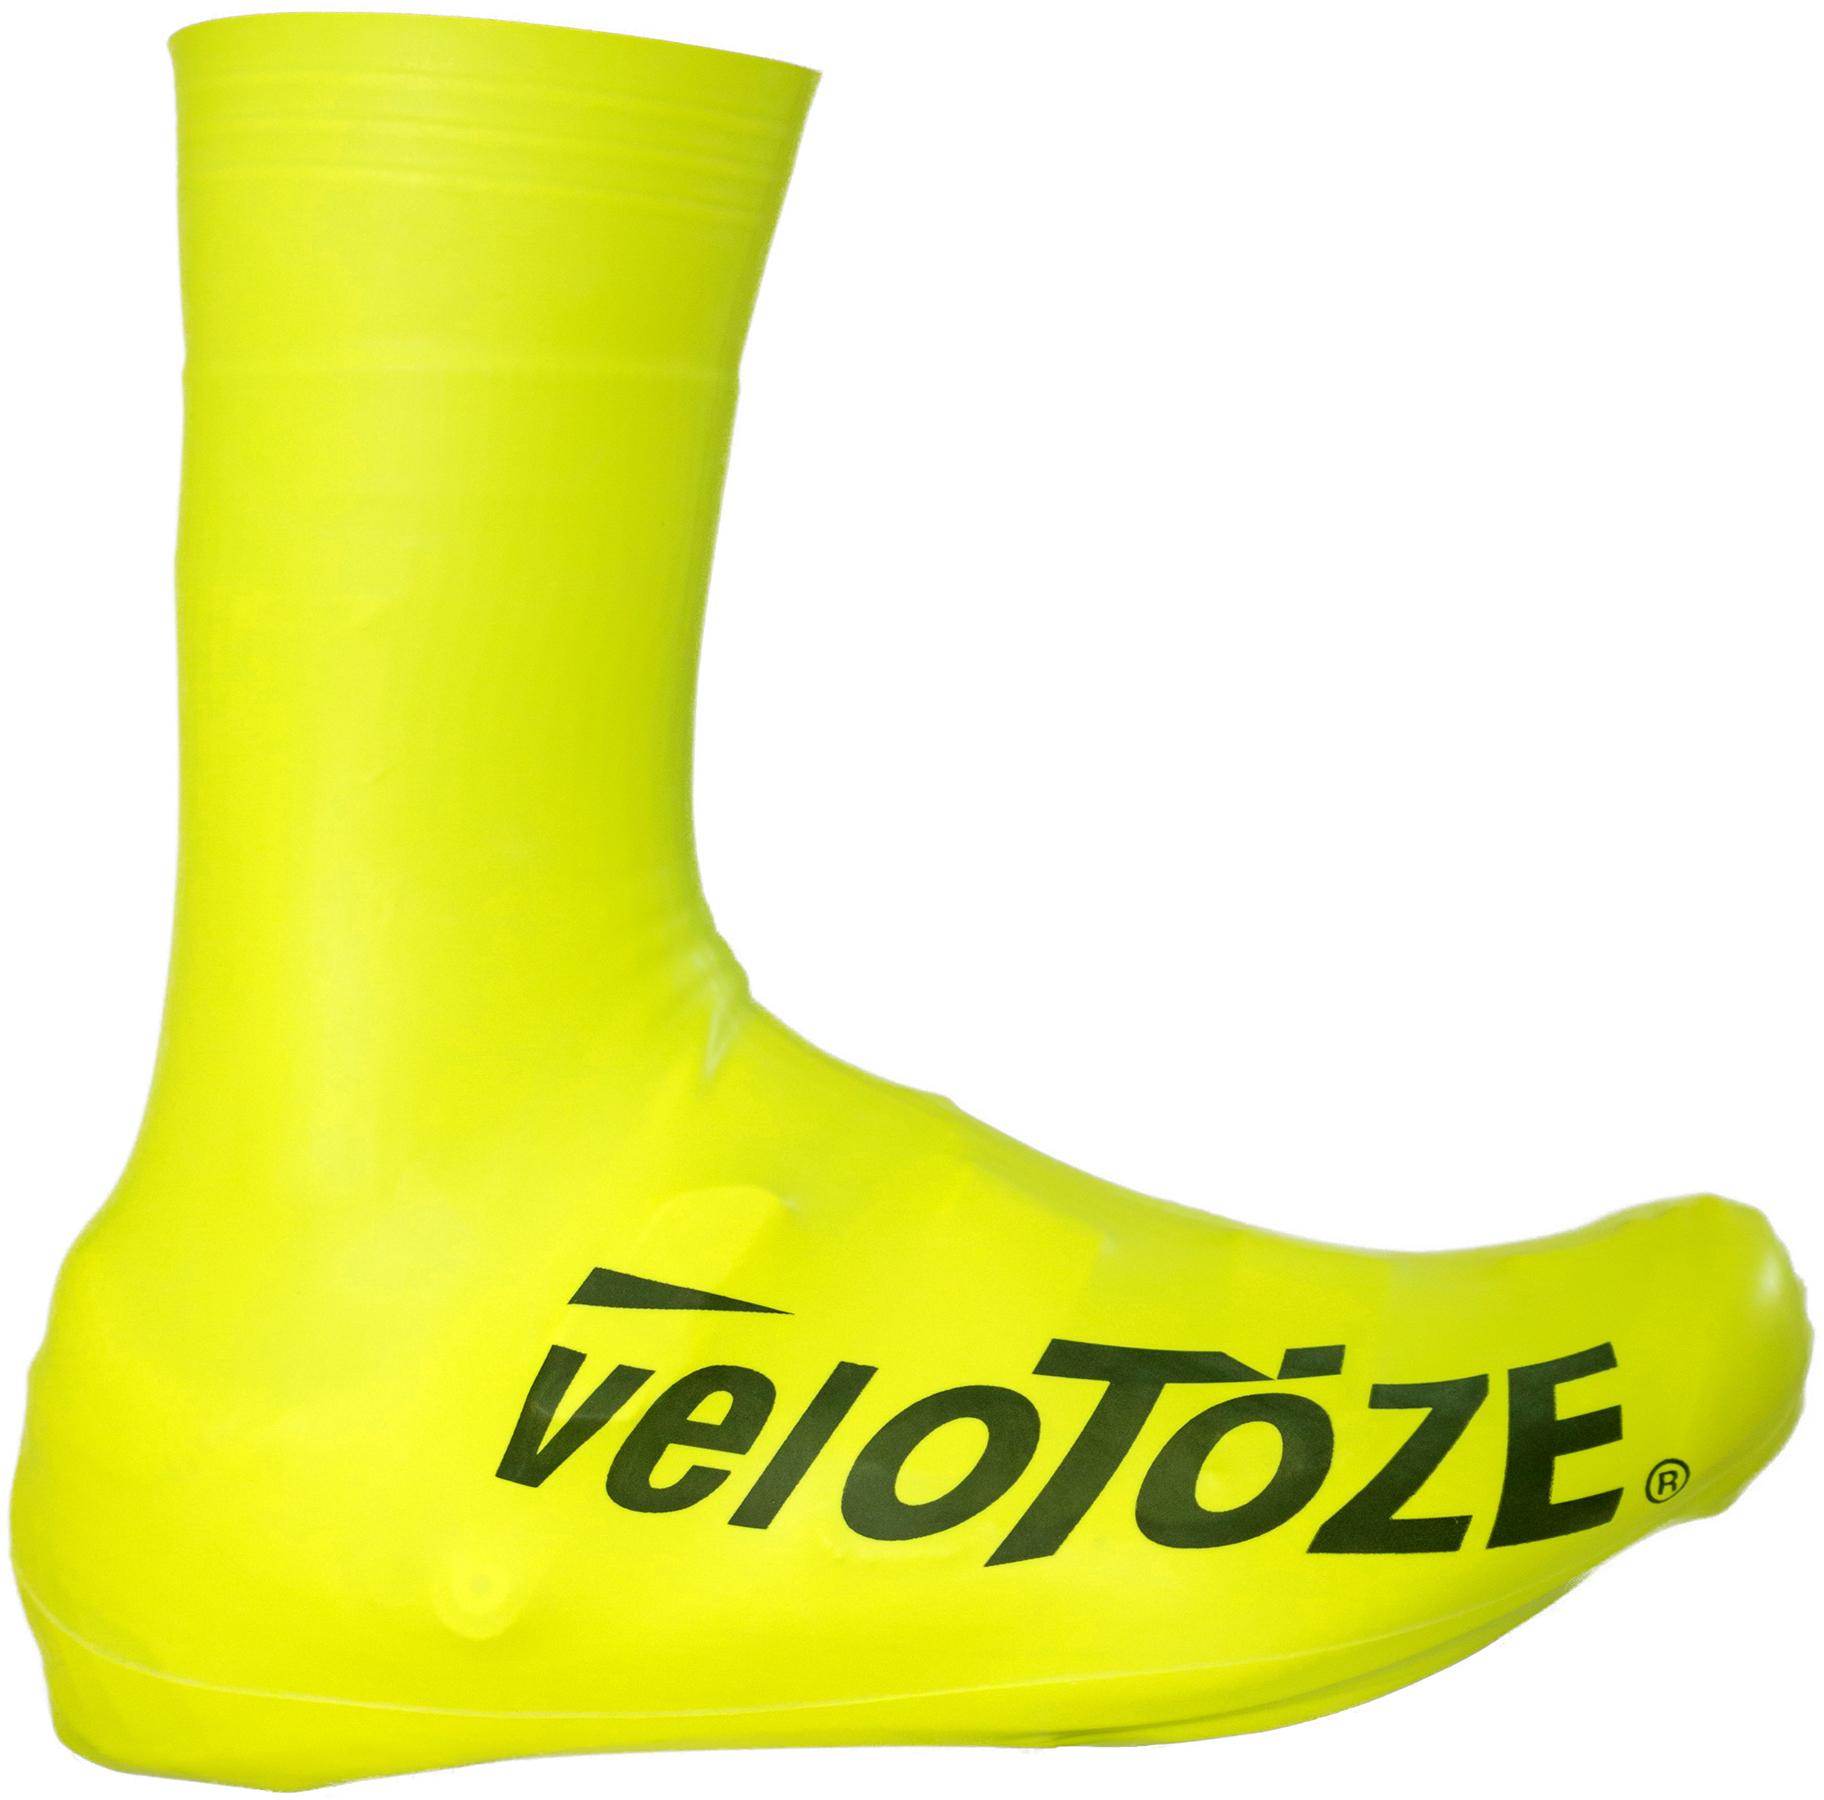 Velotoze Tall Shoe Covers 2.0 - Hi-viz Yellow